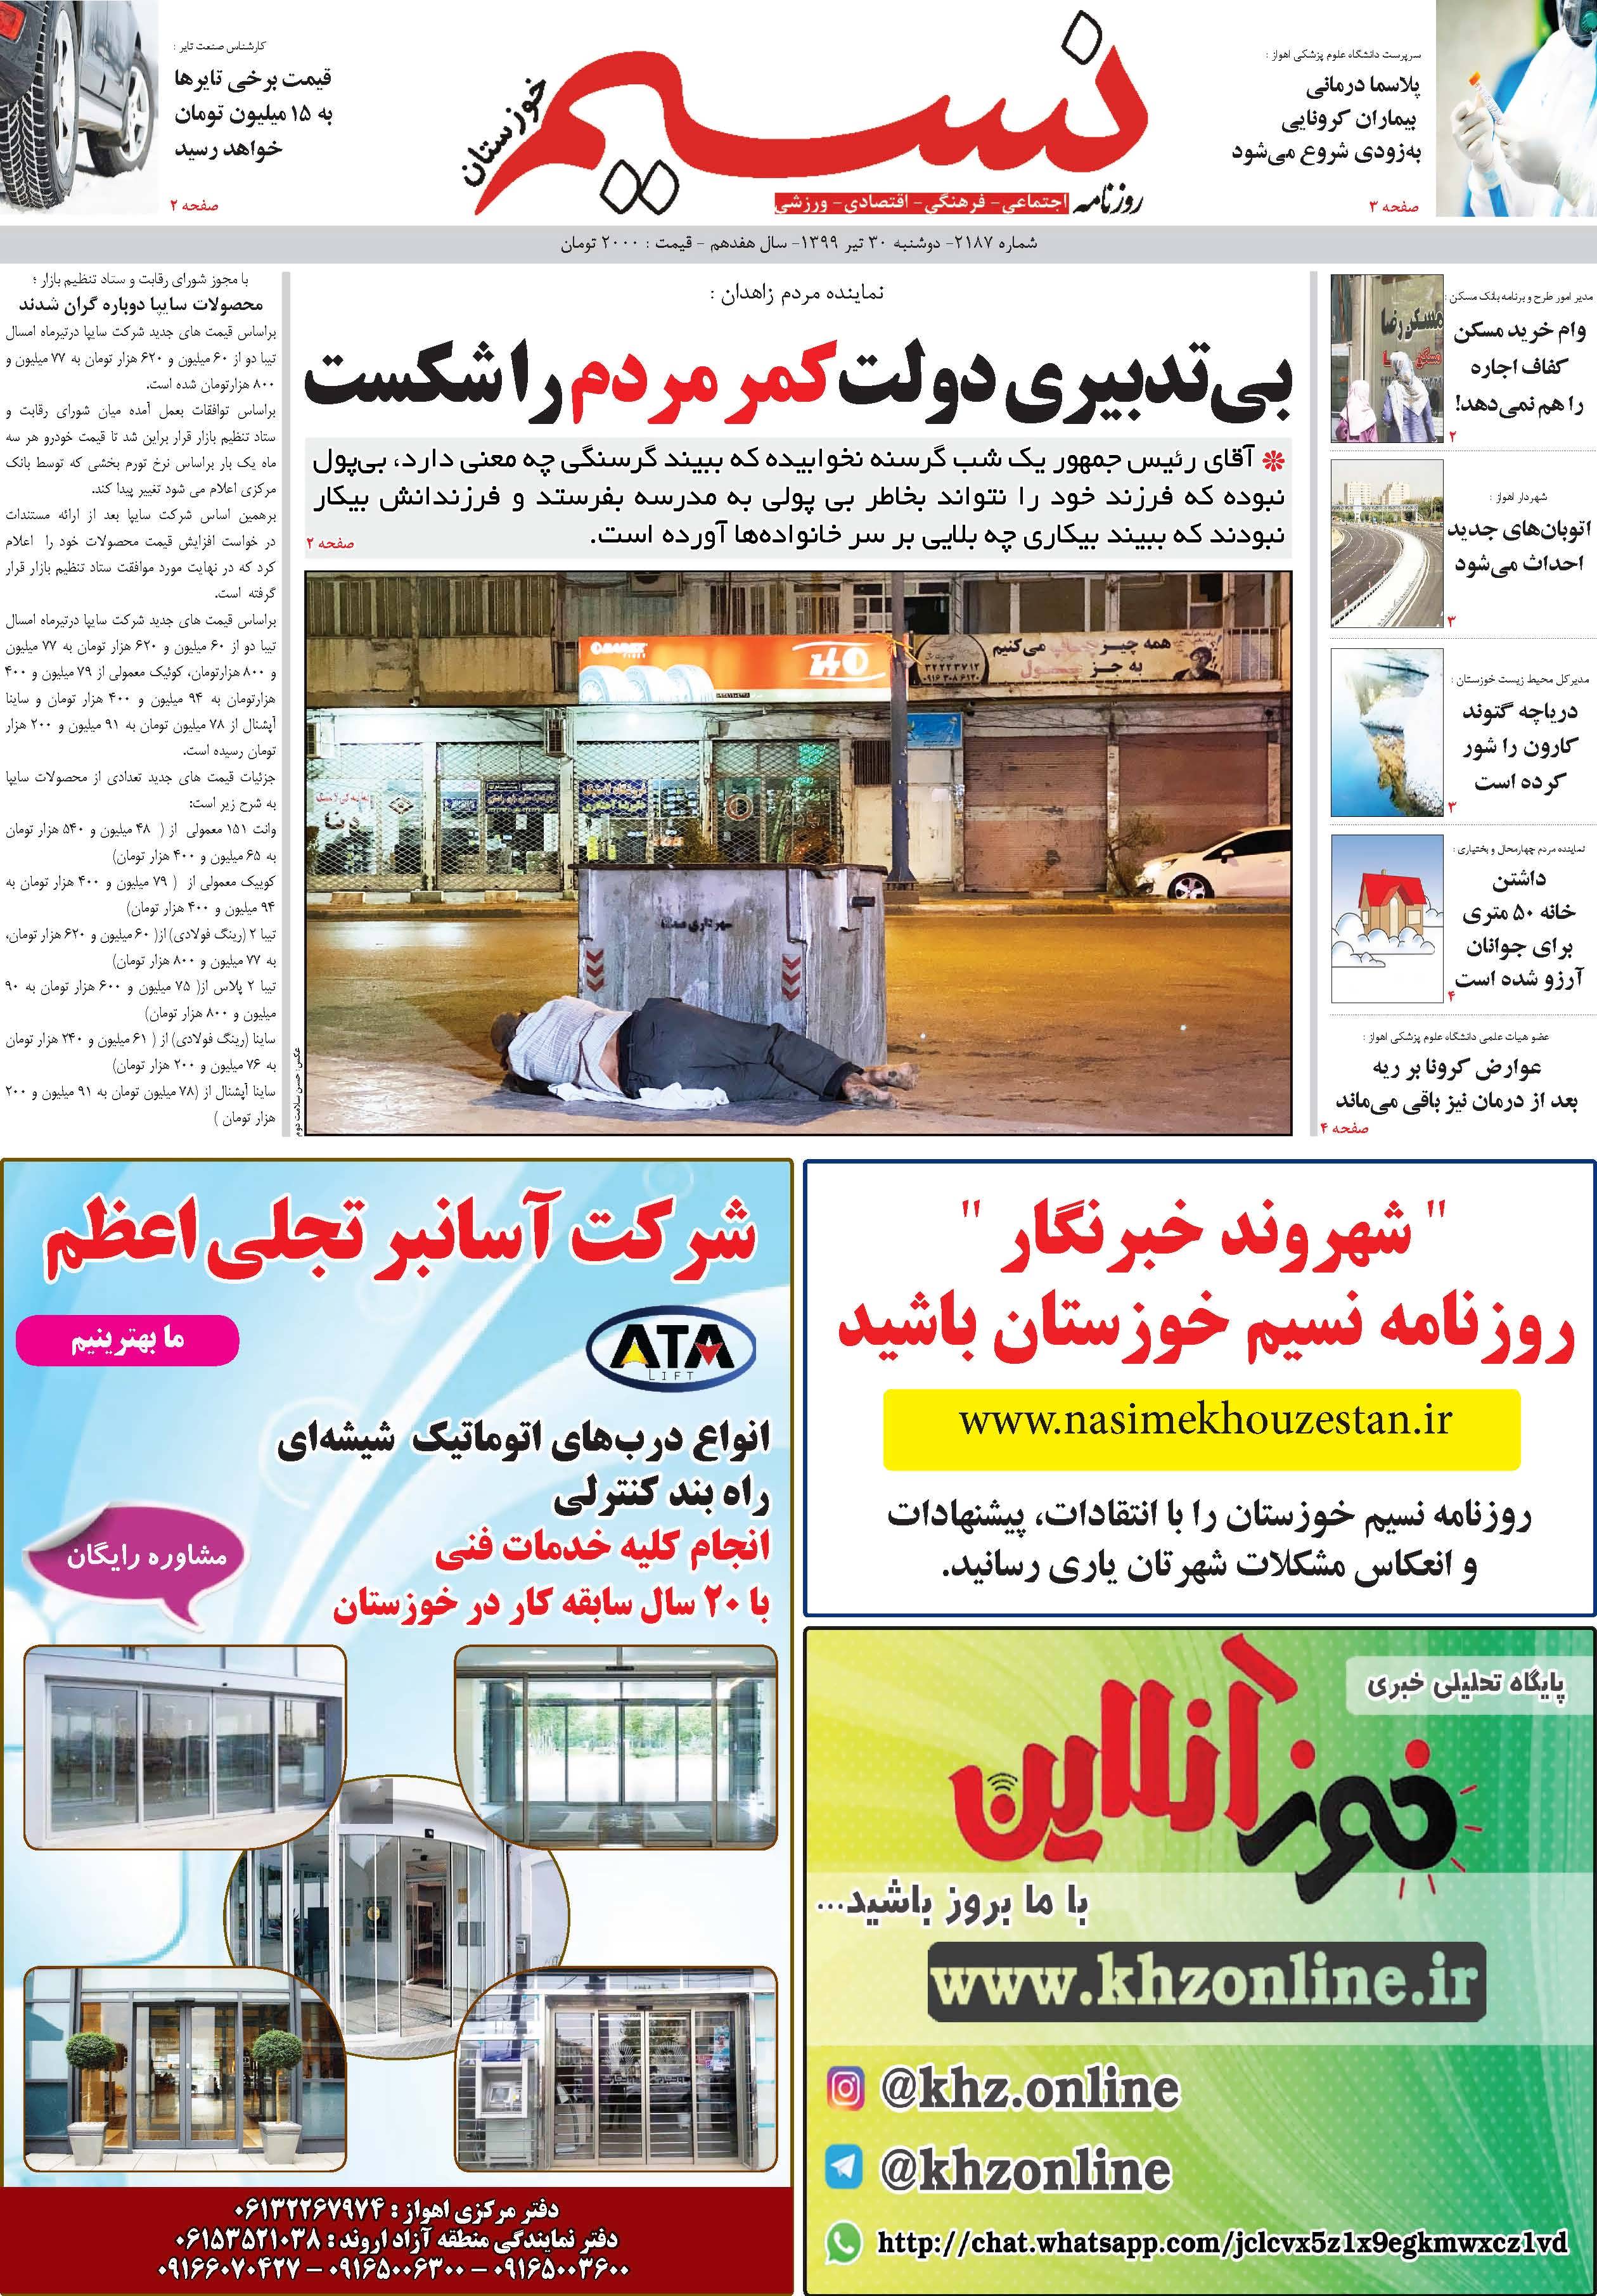 صفحه اصلی روزنامه نسیم شماره 2187 